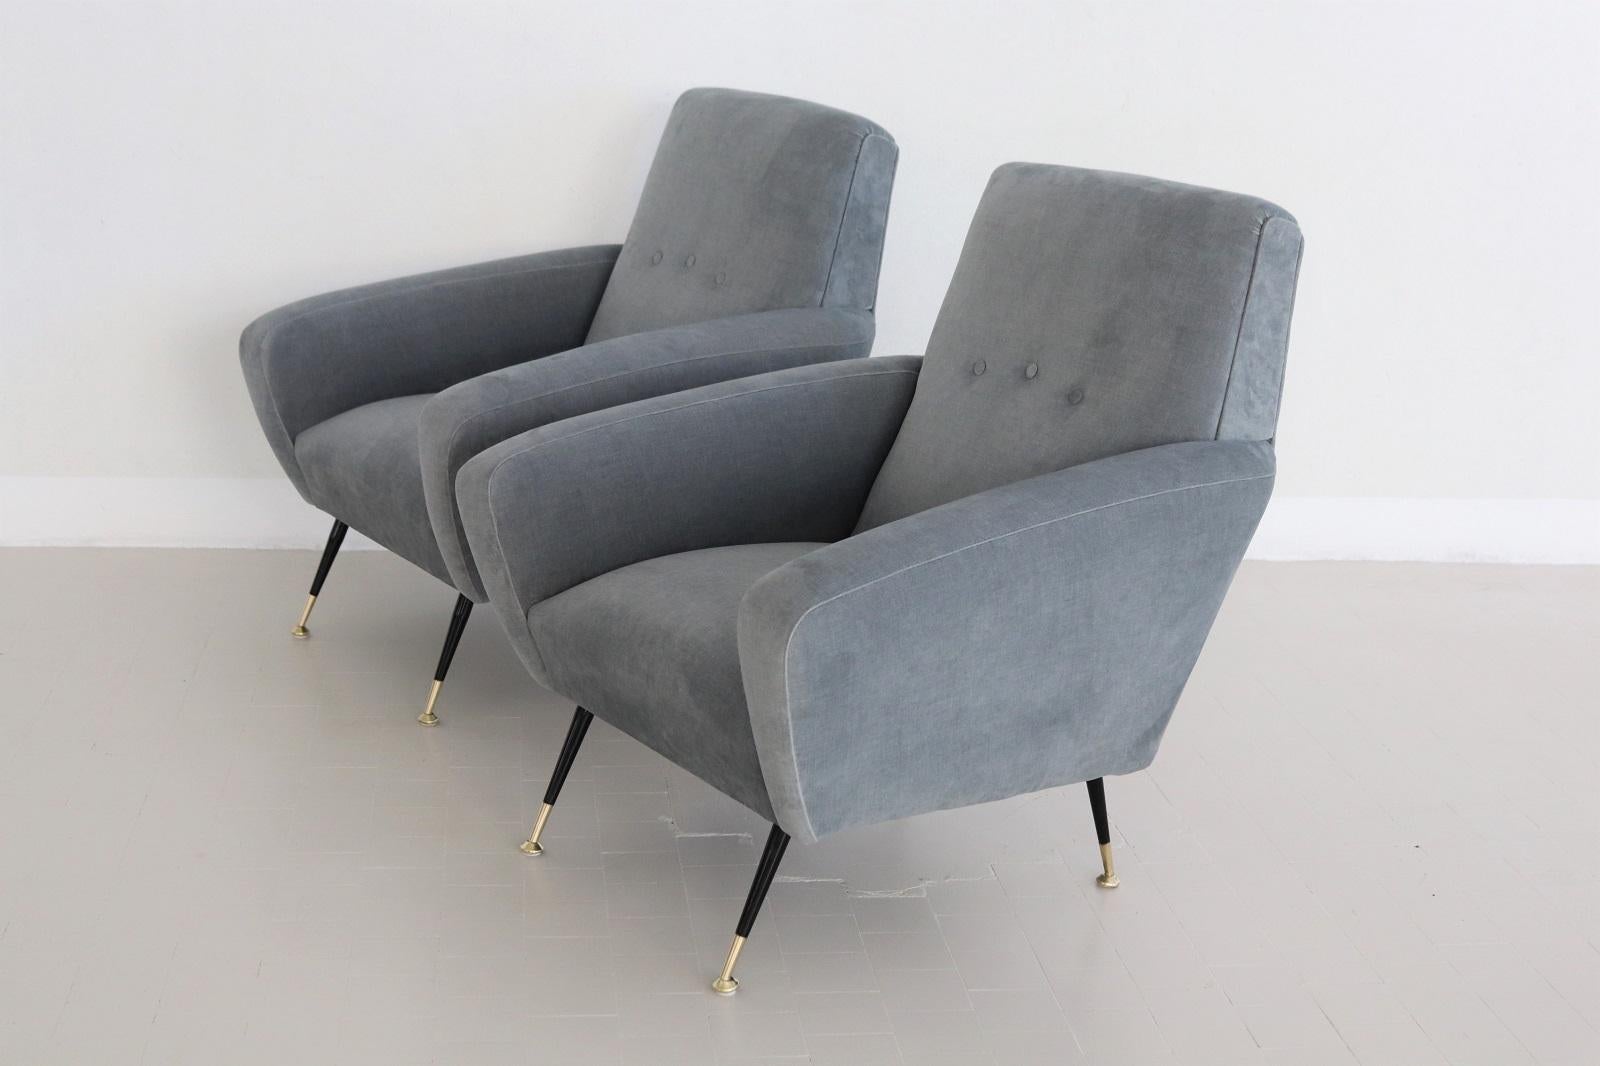 Magnifique paire de fauteuils italiens originaux avec embouts en laiton, datant du milieu du siècle dernier, années 1950.
Les fauteuils sont équipés de ressorts à l'intérieur pour un confort d'assise doux et élastique de grande qualité.
Entièrement